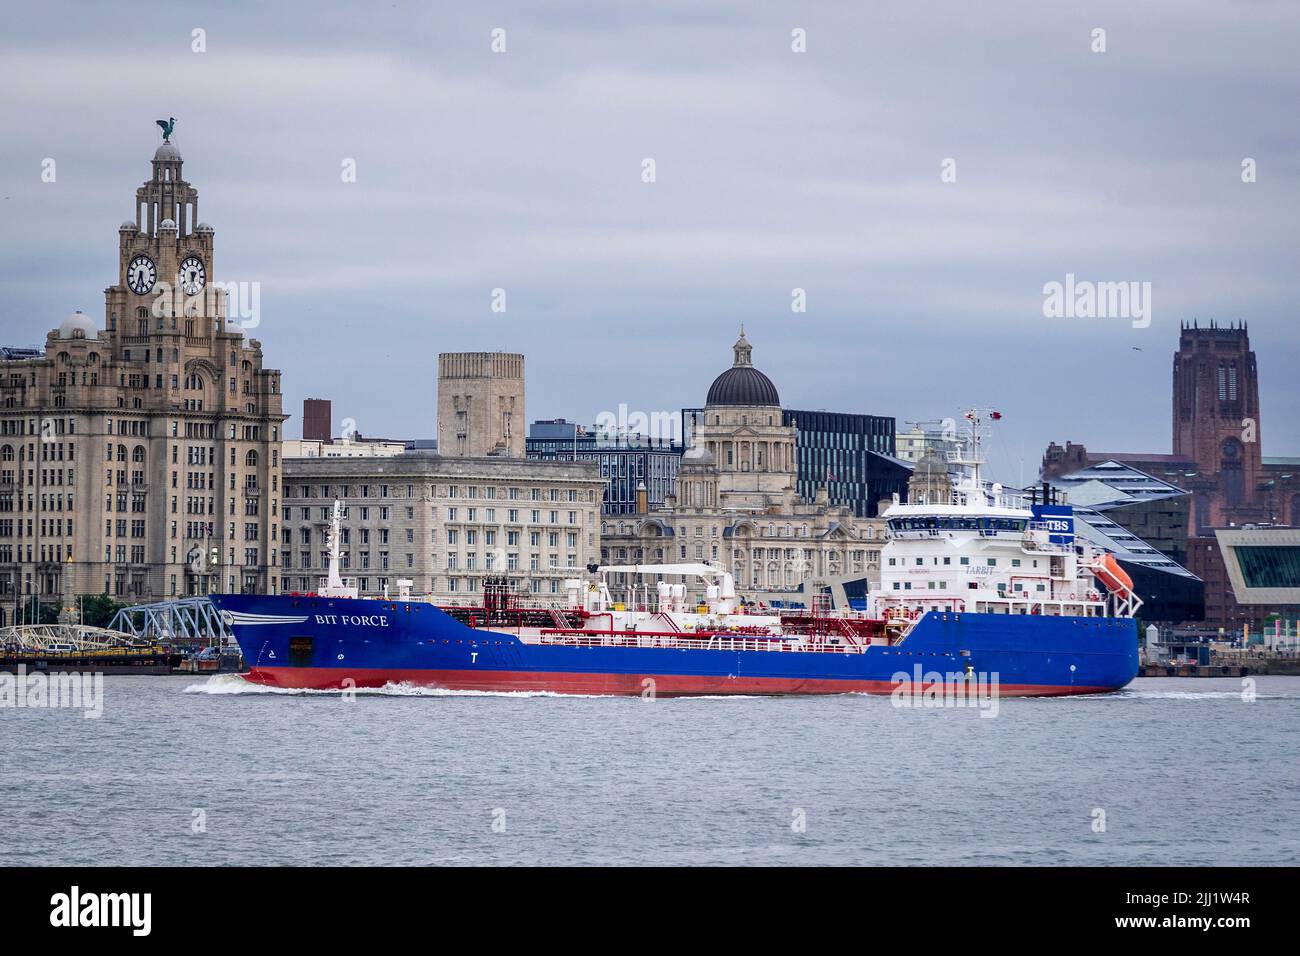 Bit Force un pétrolier construit en 2003 naviguant actuellement sous le drapeau des pays-Bas en passant par le front de mer de Liverpool. Banque D'Images